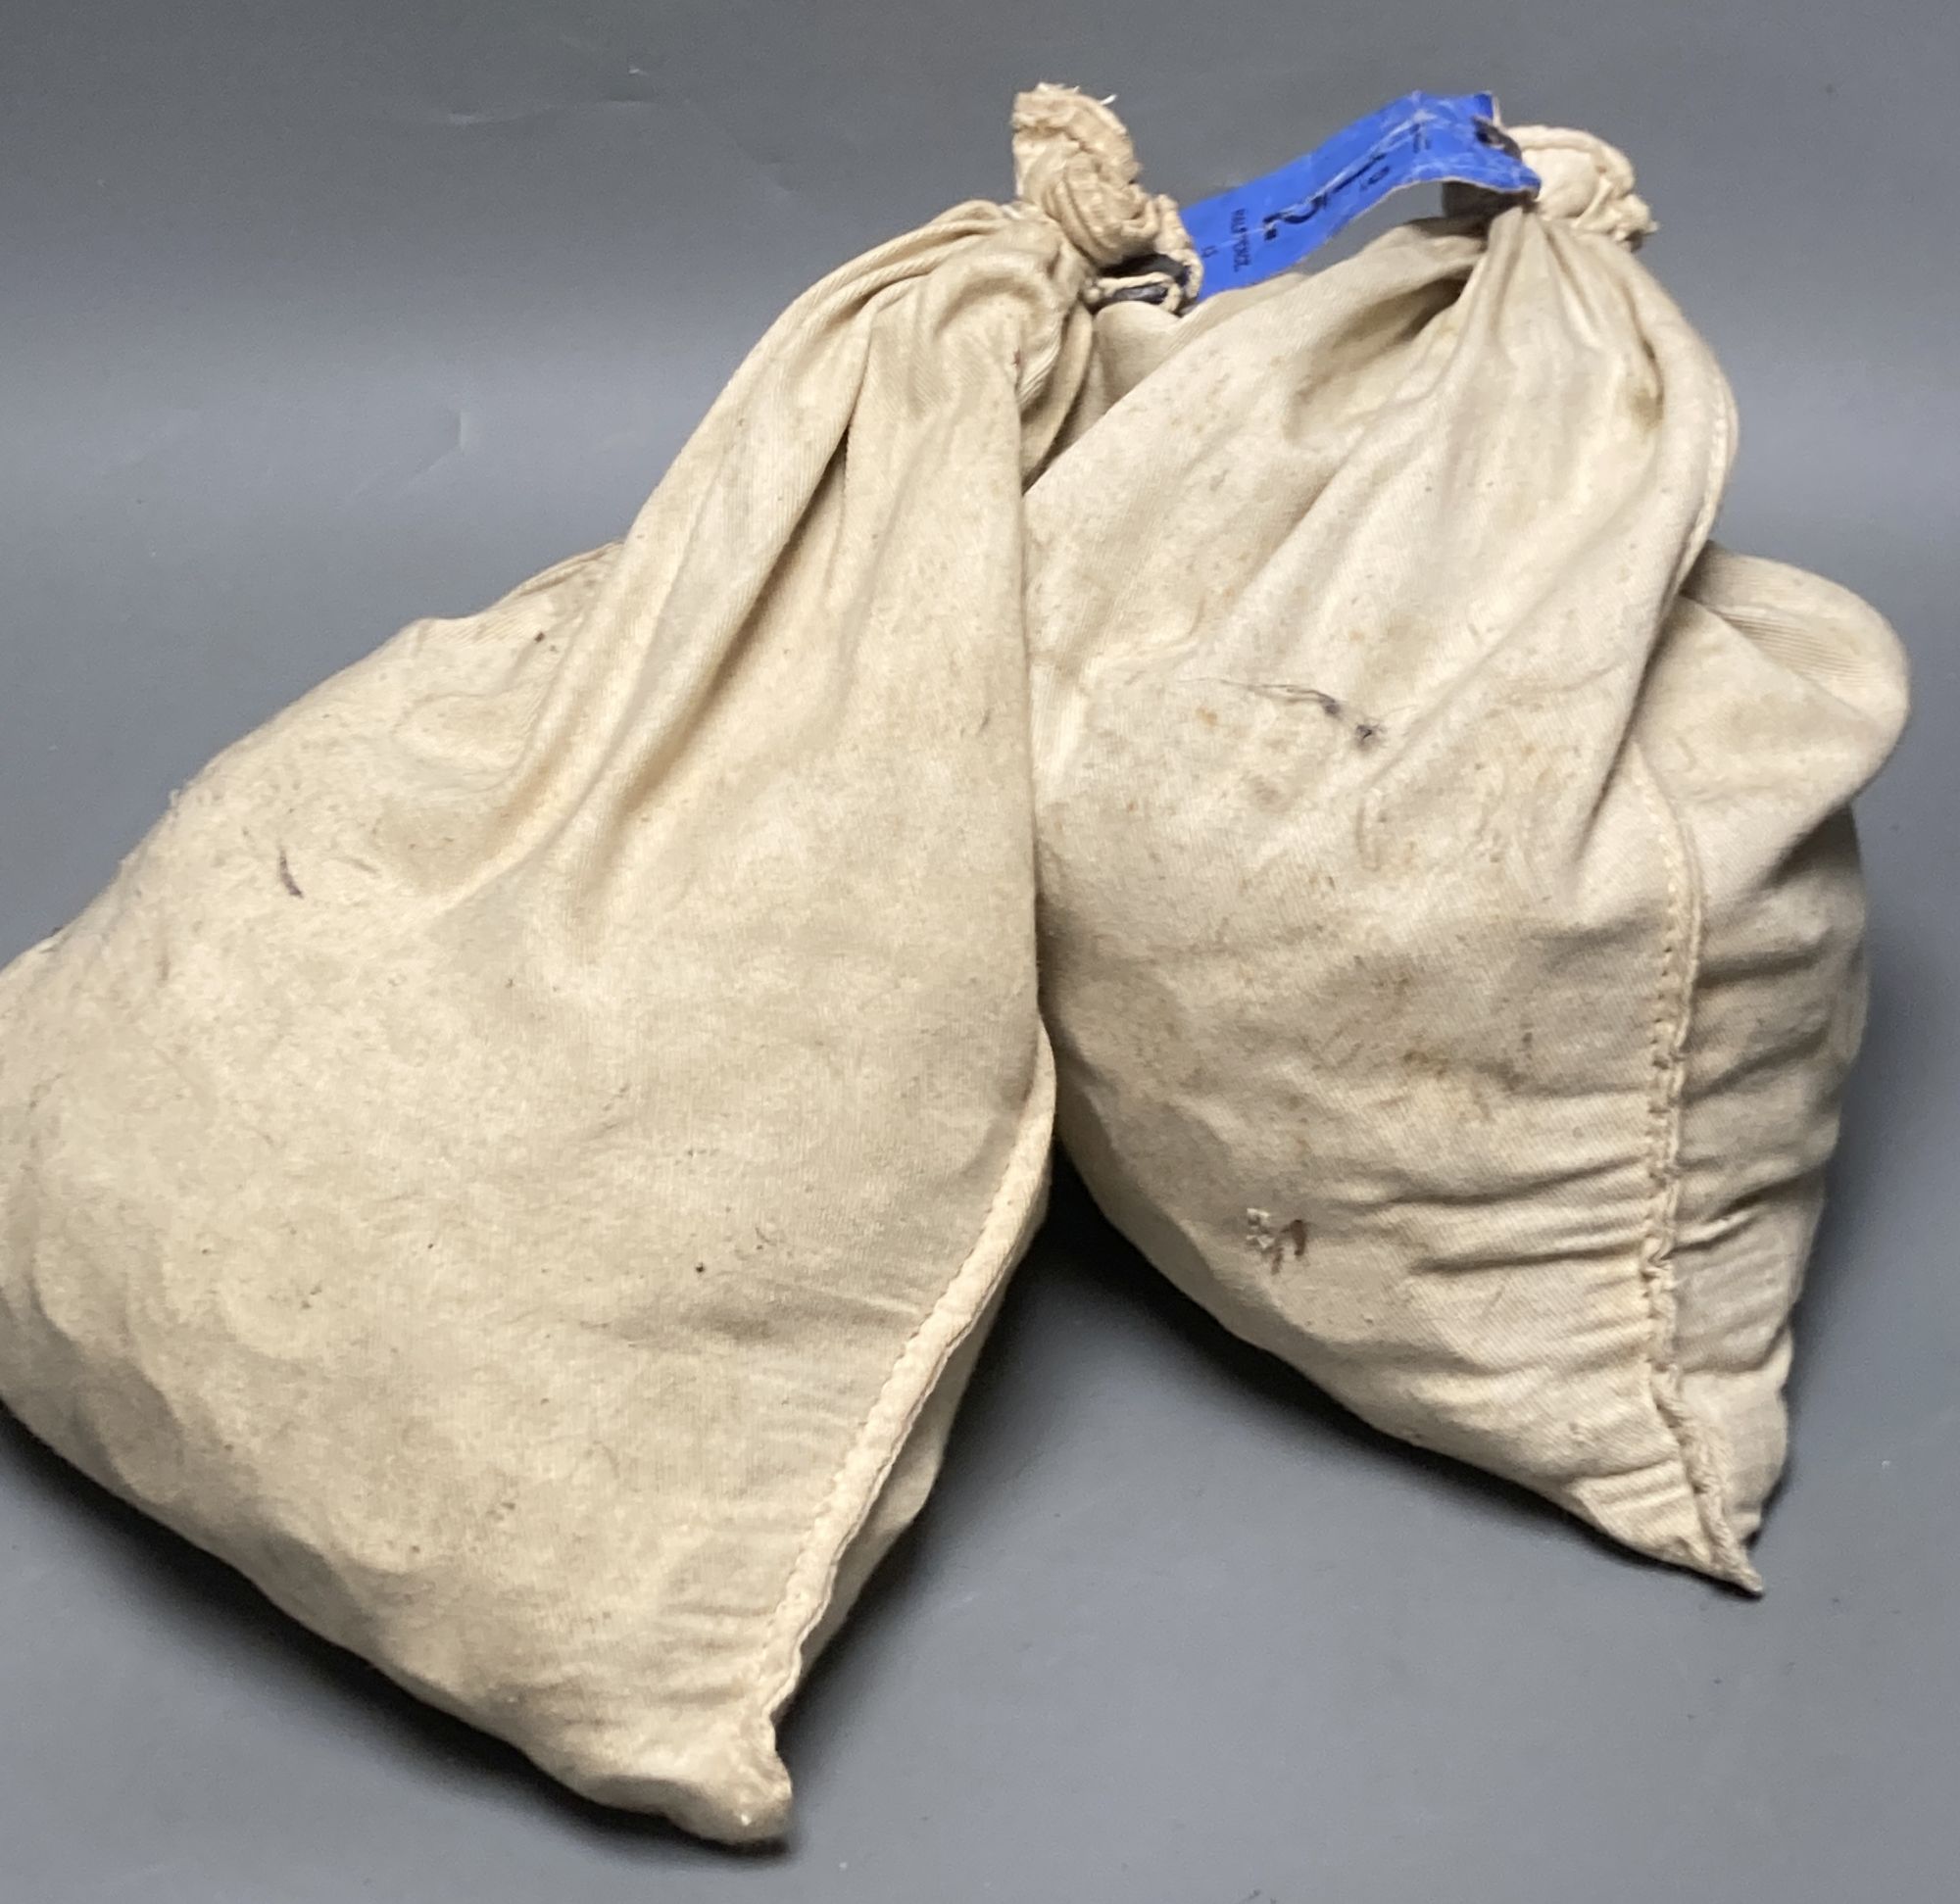 Two sacks of Elizabeth II half pennies, weighing 13.70kg each